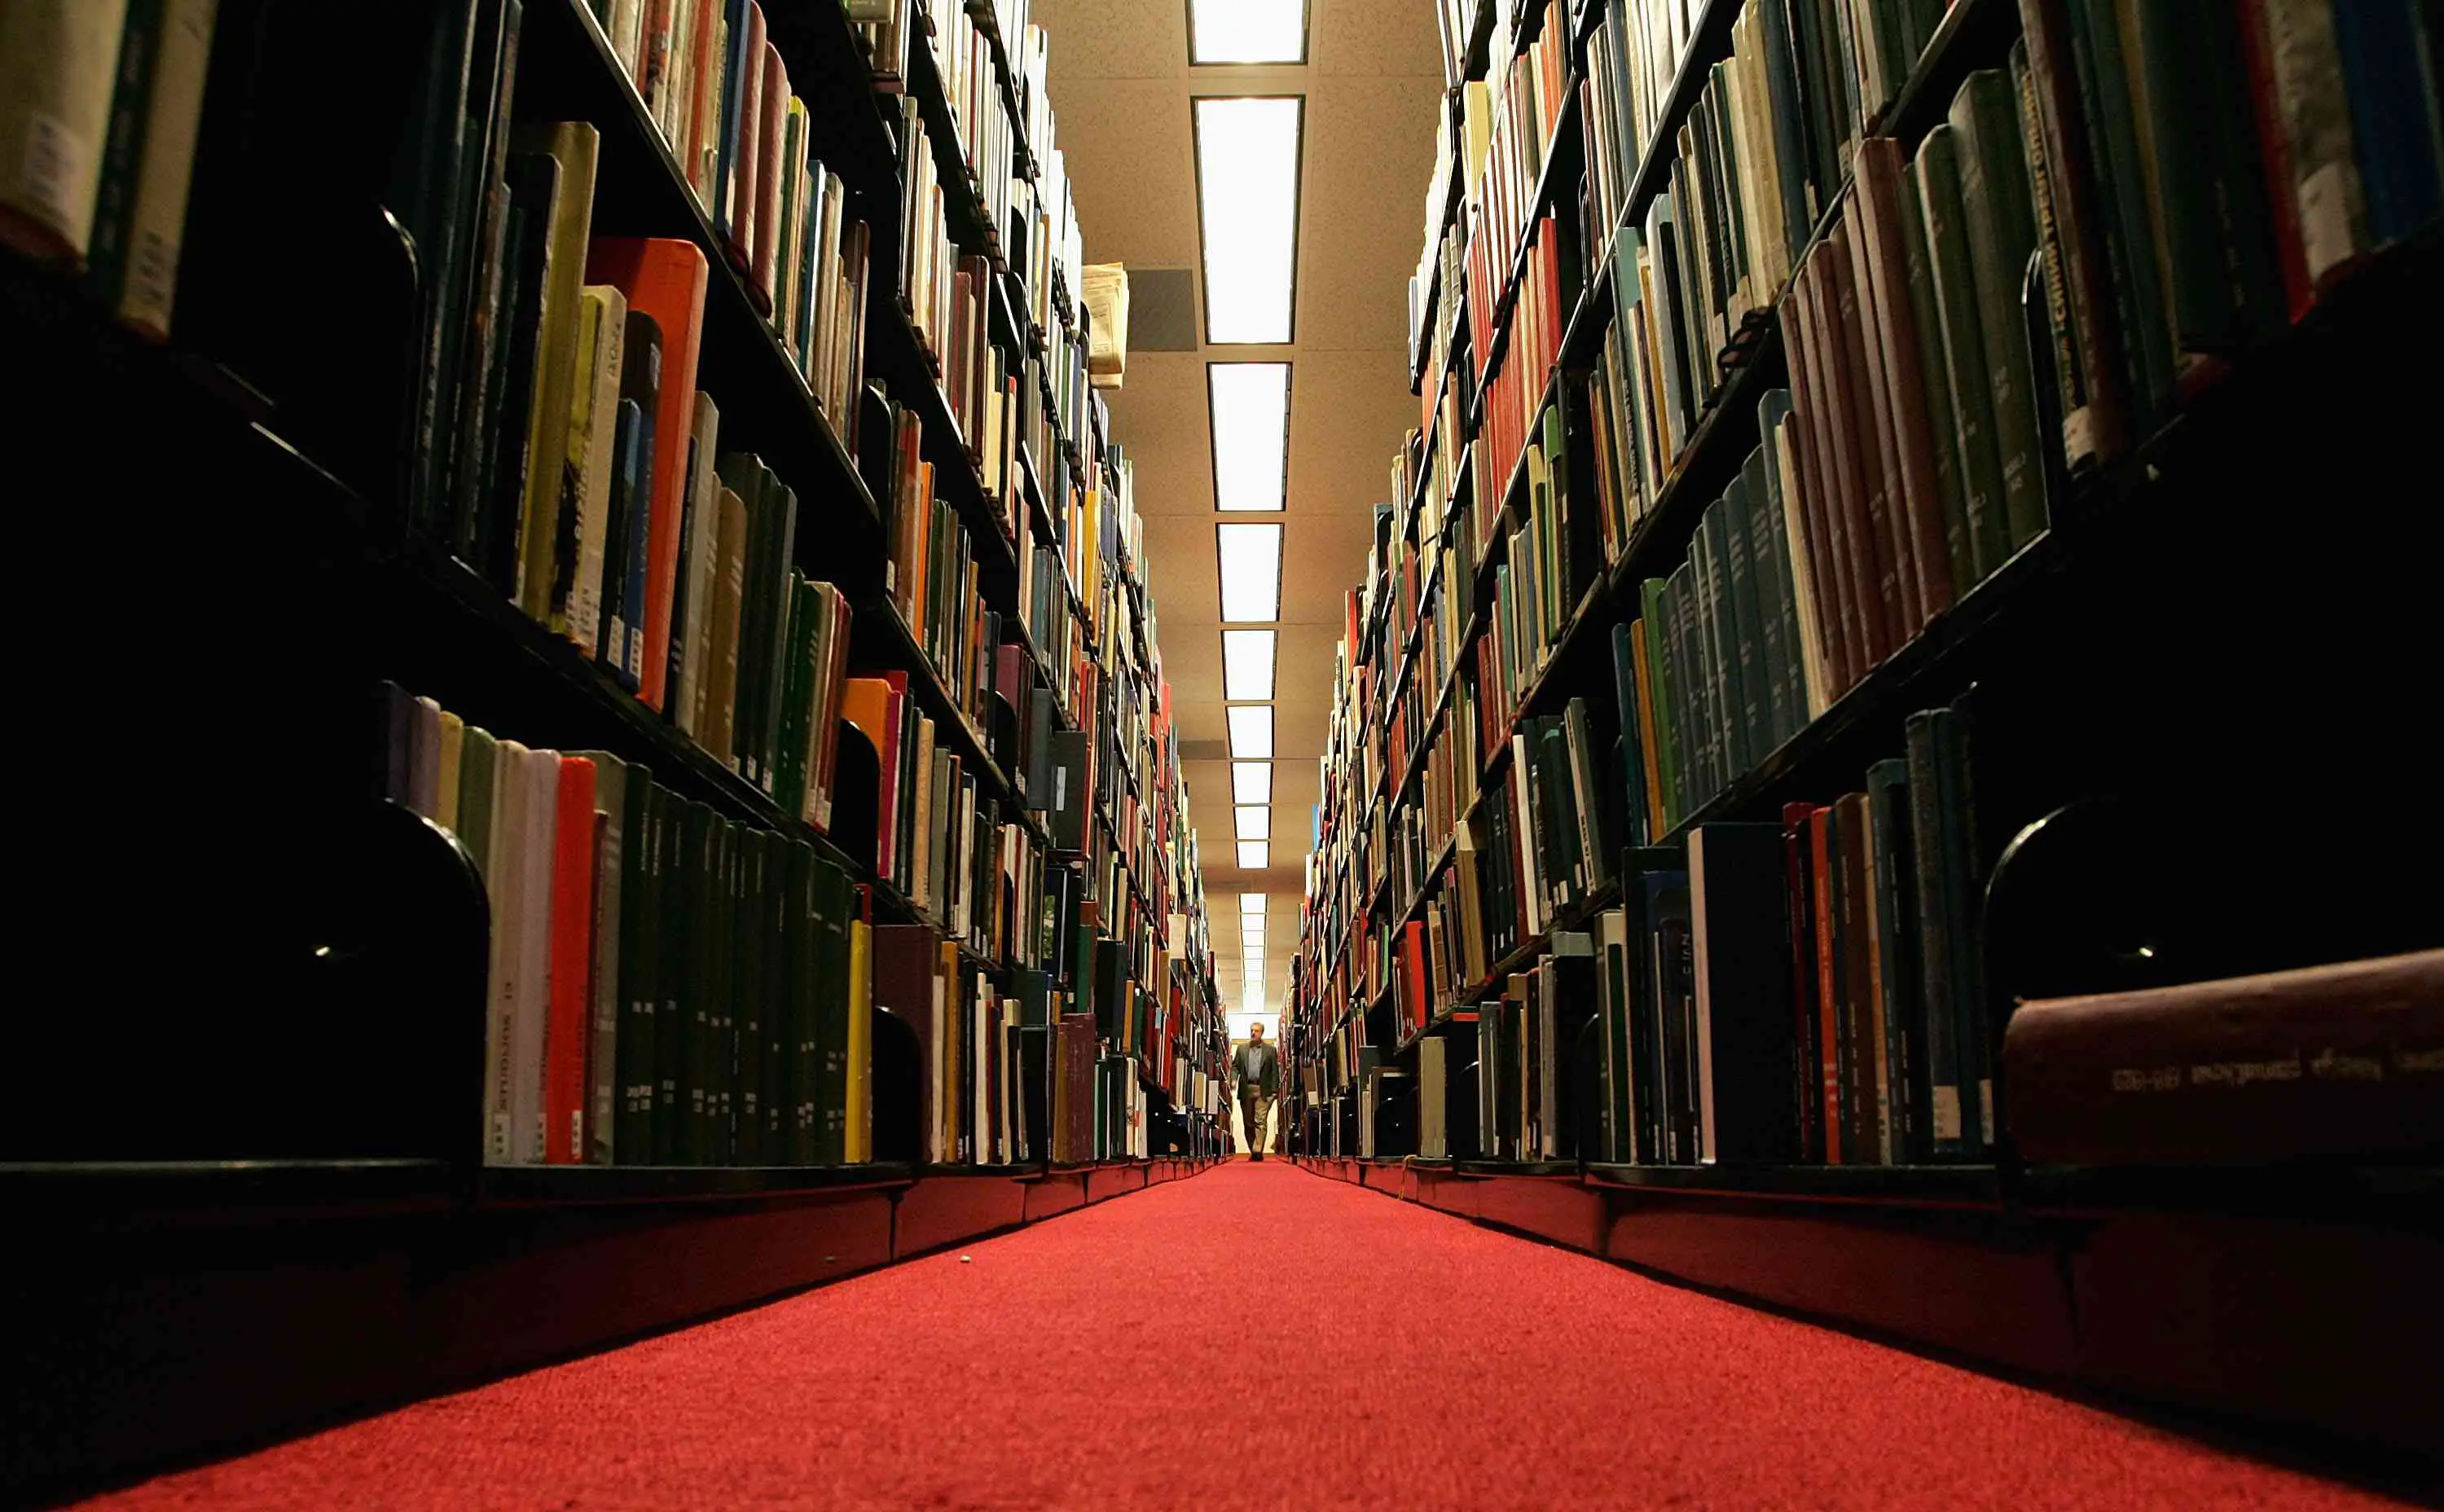 Os livros ocupam o corredor de uma biblioteca, representando as Bibliotecas do Google Livros